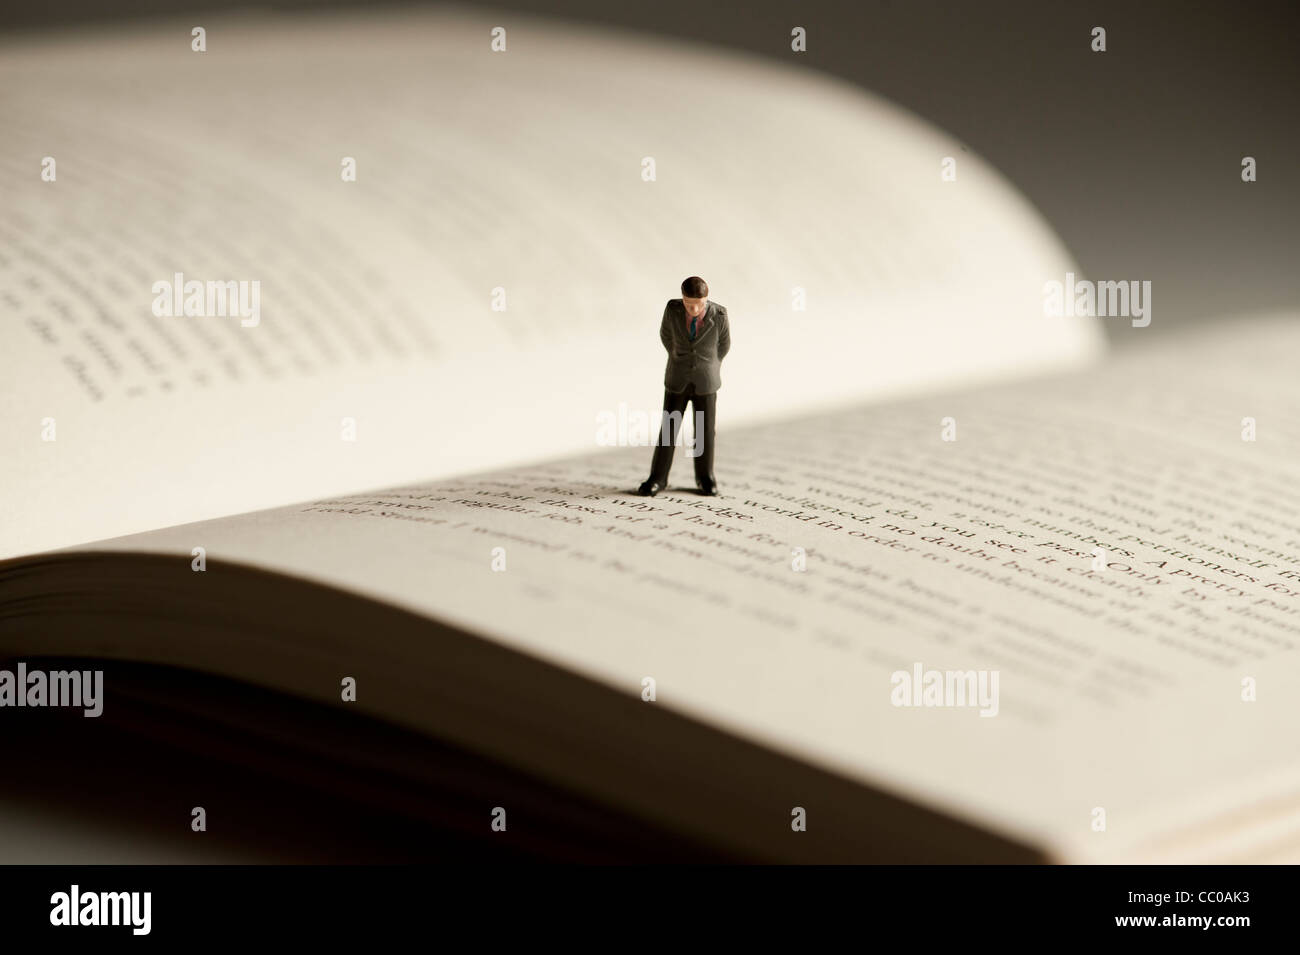 Una pequeña figura de un hombre caminando sobre un libro abierto - imagen conceptual para la alfabetización y la lectura Foto de stock